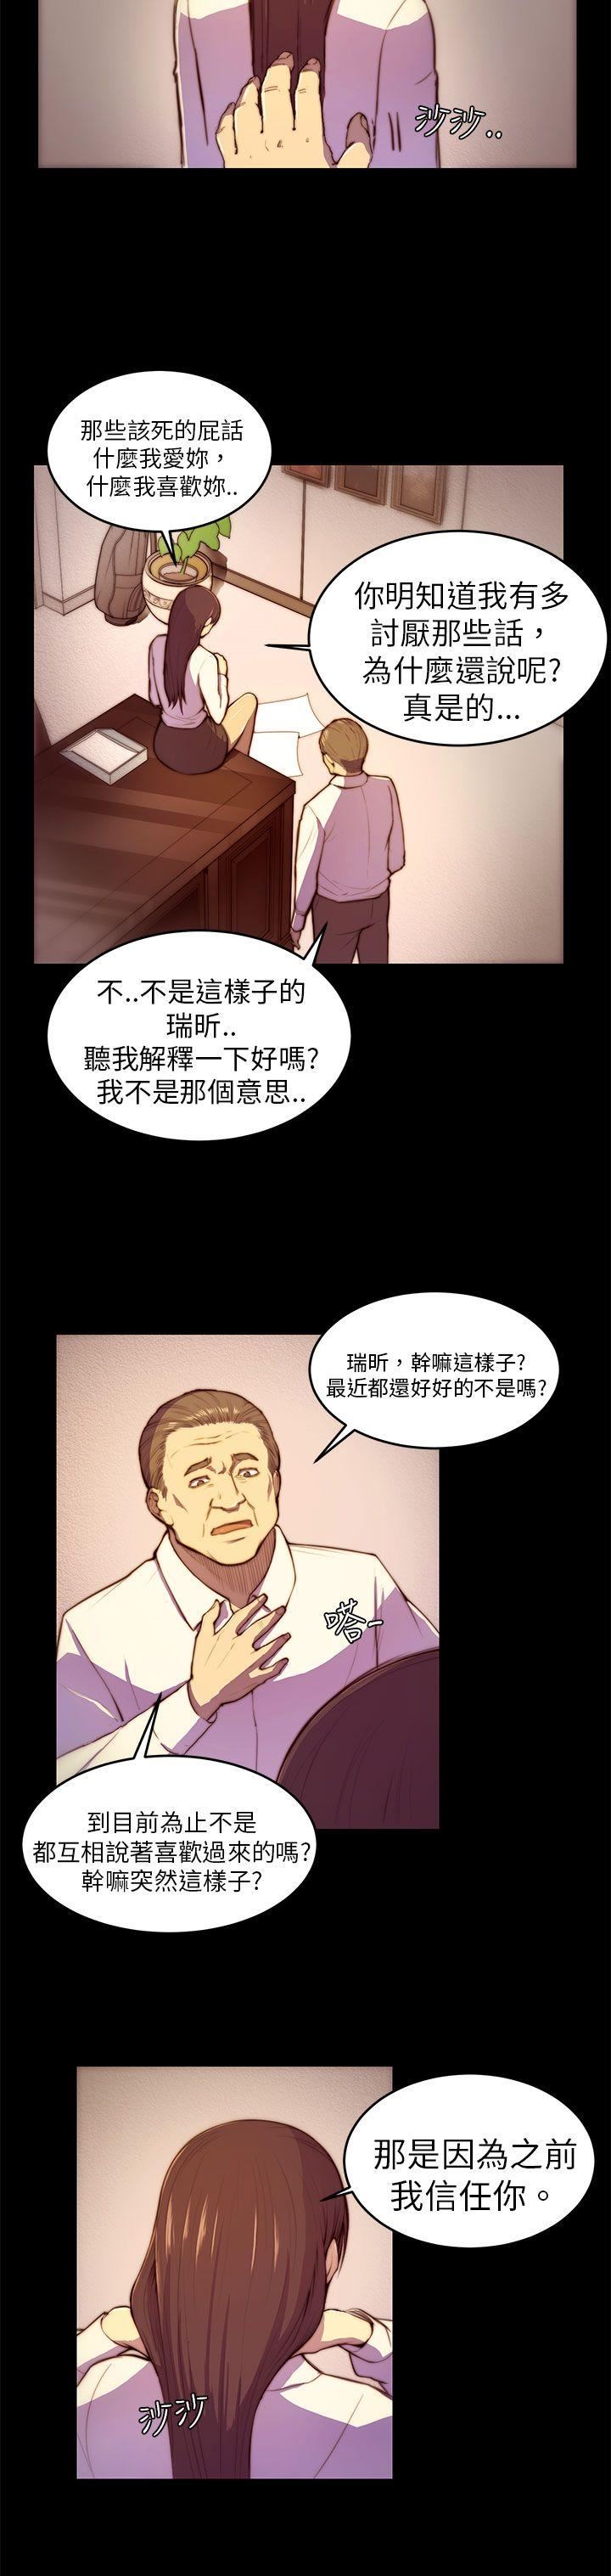 韩国污漫画 斯德哥爾摩癥候群 第3话 4